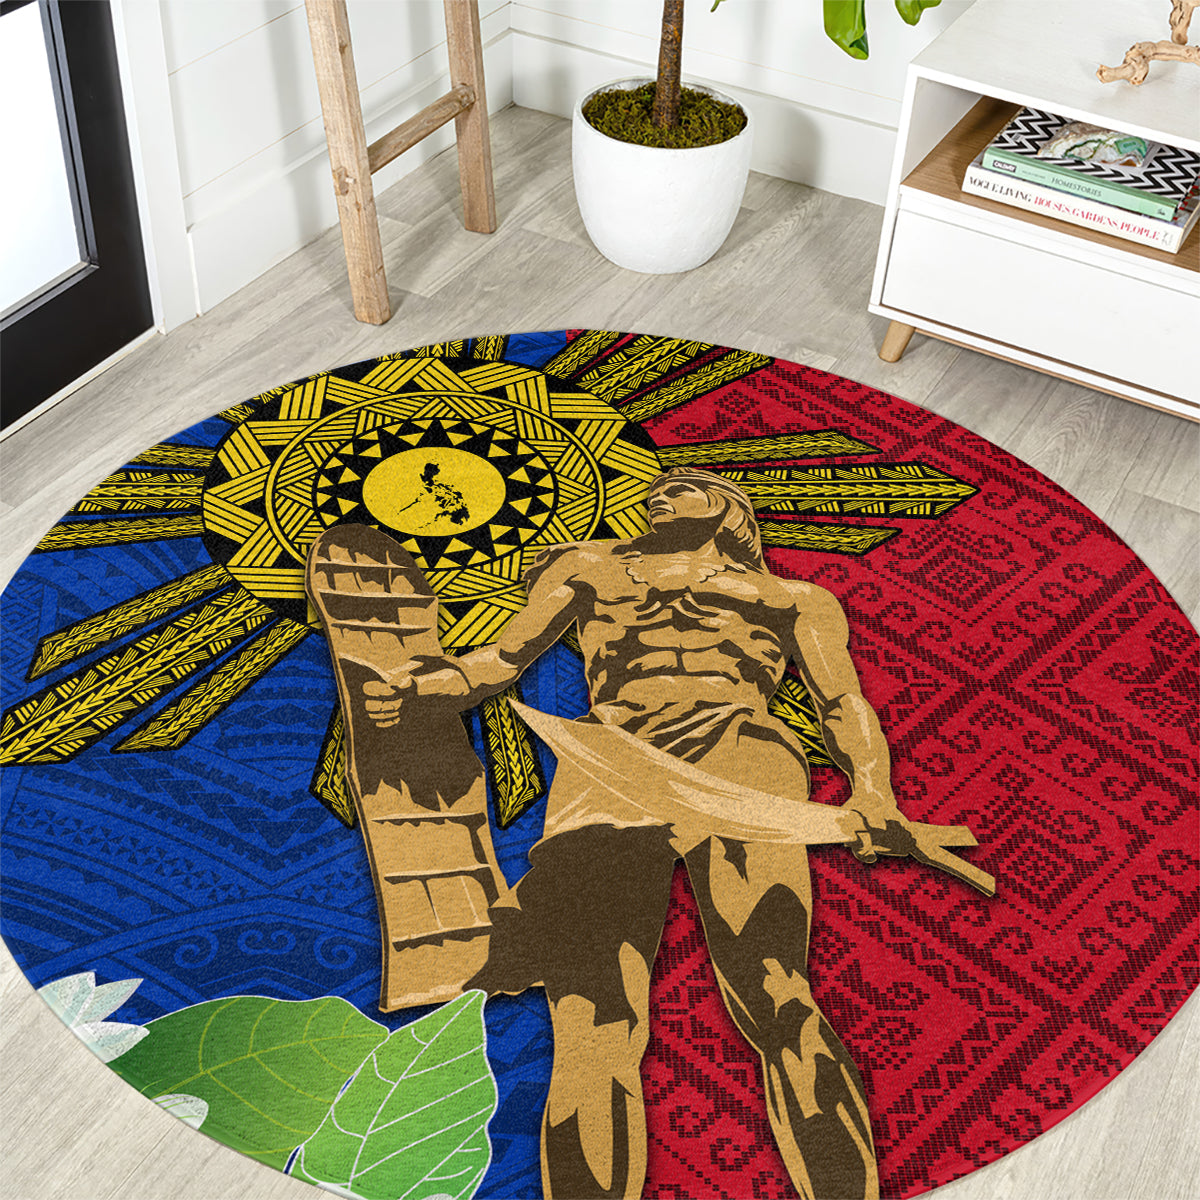 Philippines Lapu Lapu King Jasmine Flowers Round Carpet Filipino Sun Tattoo